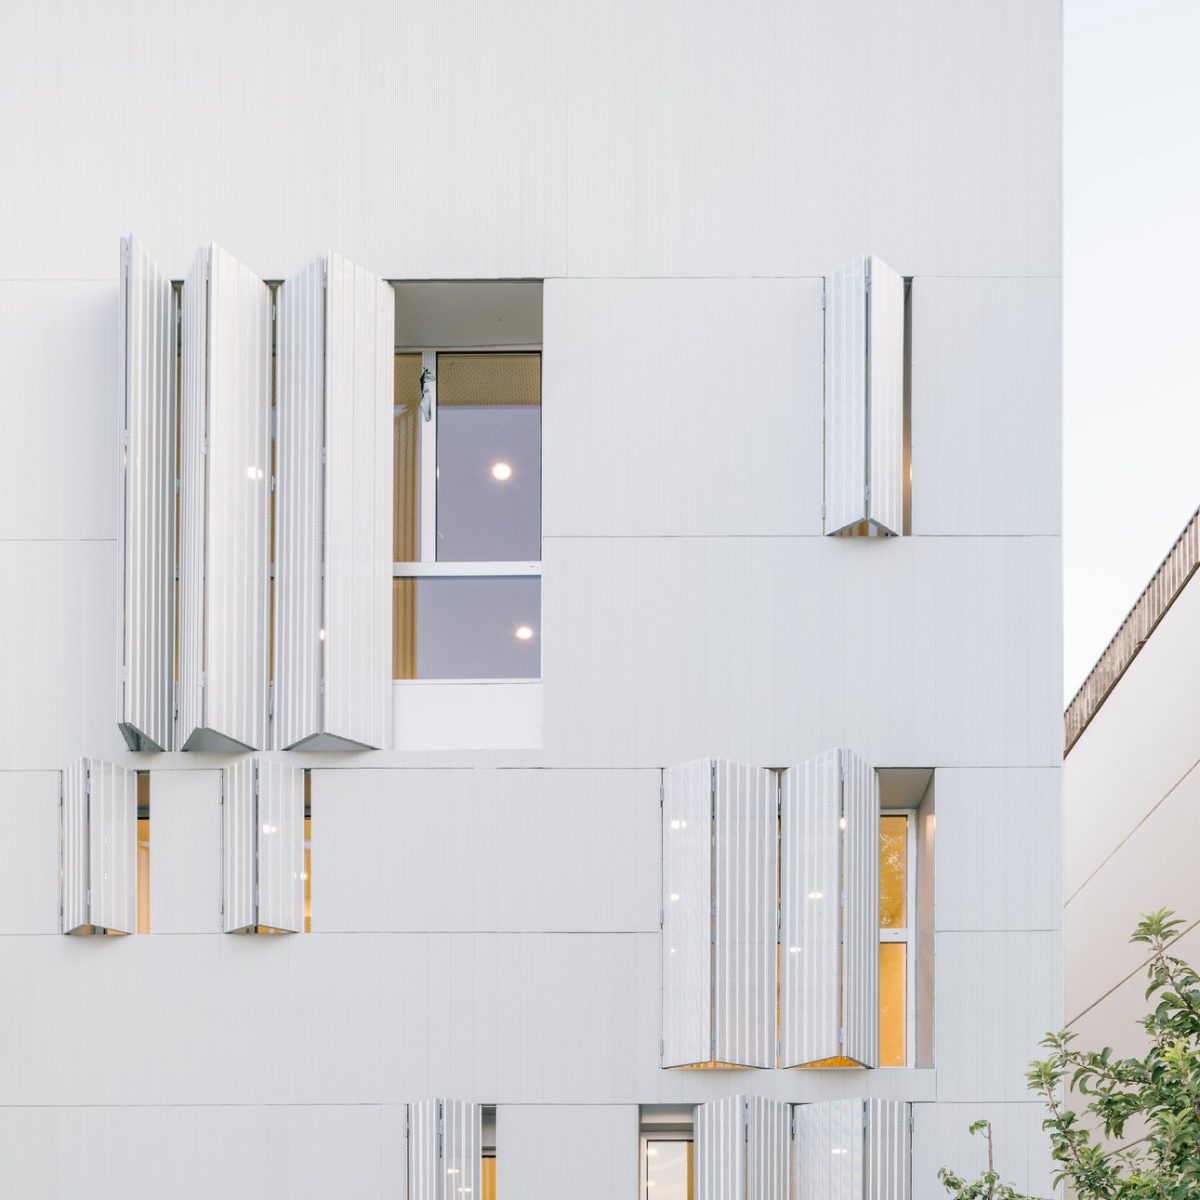 Aluminio para la rehabilitación de fachada ventilada